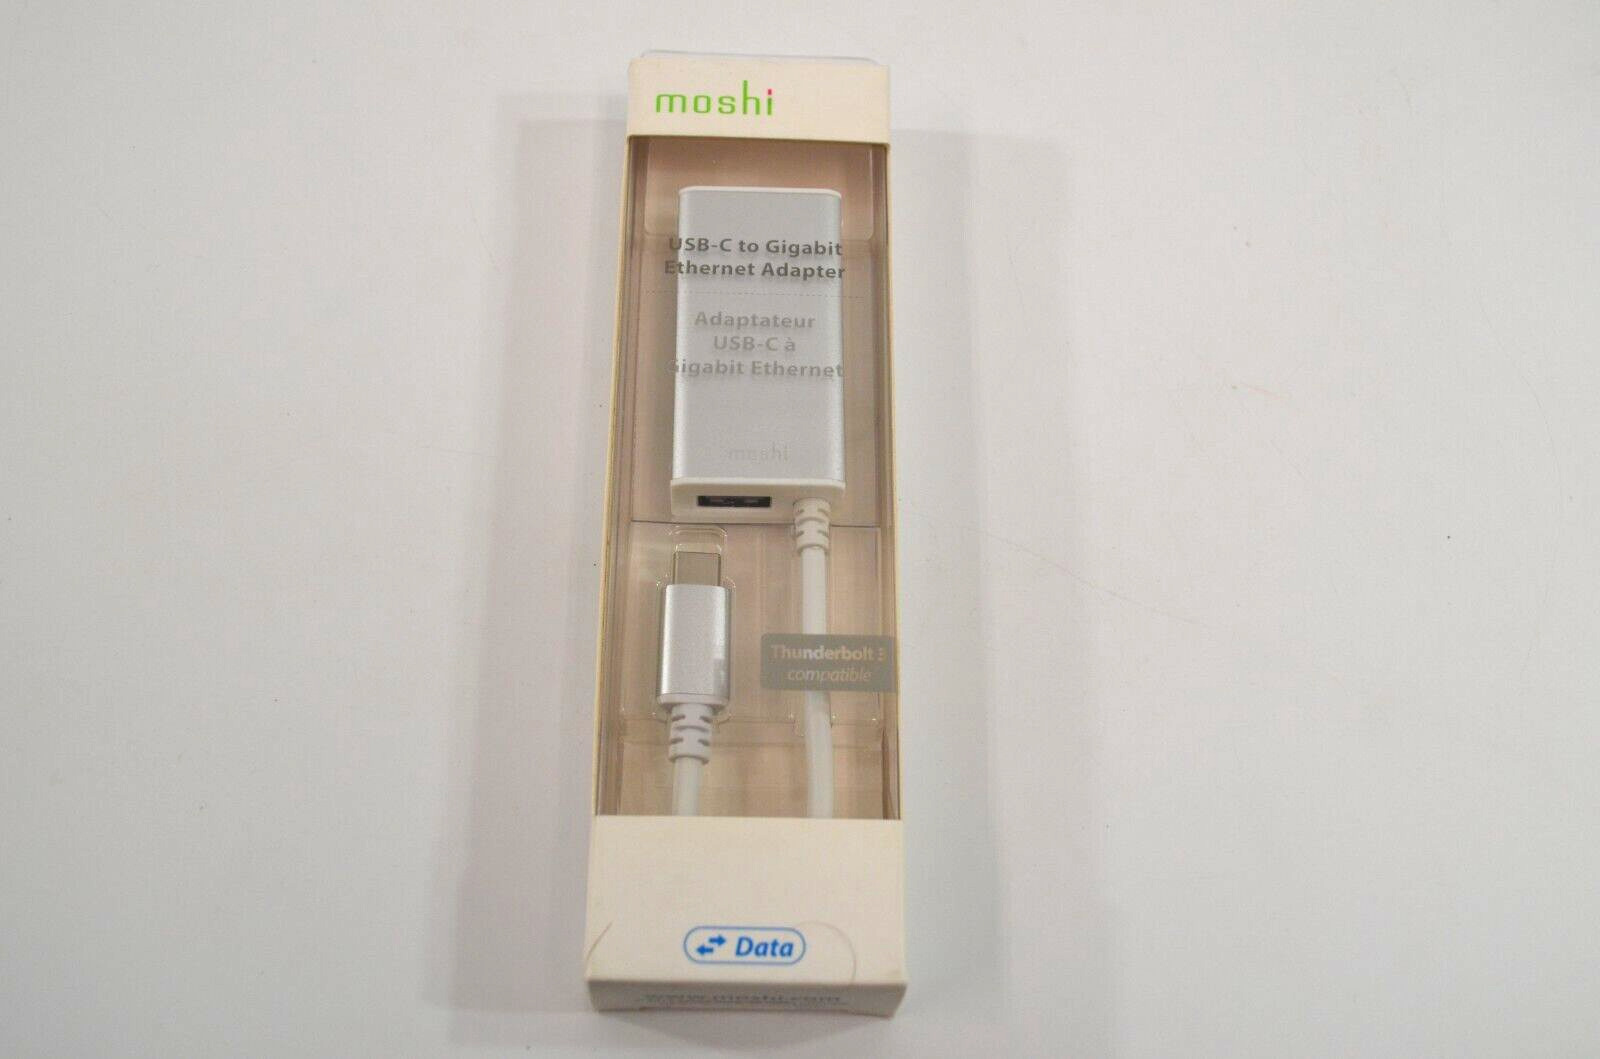 Moshi USB-C to Gigabit Ethernet Adapter Thunderbolt 3 Compatible NEW SEALED